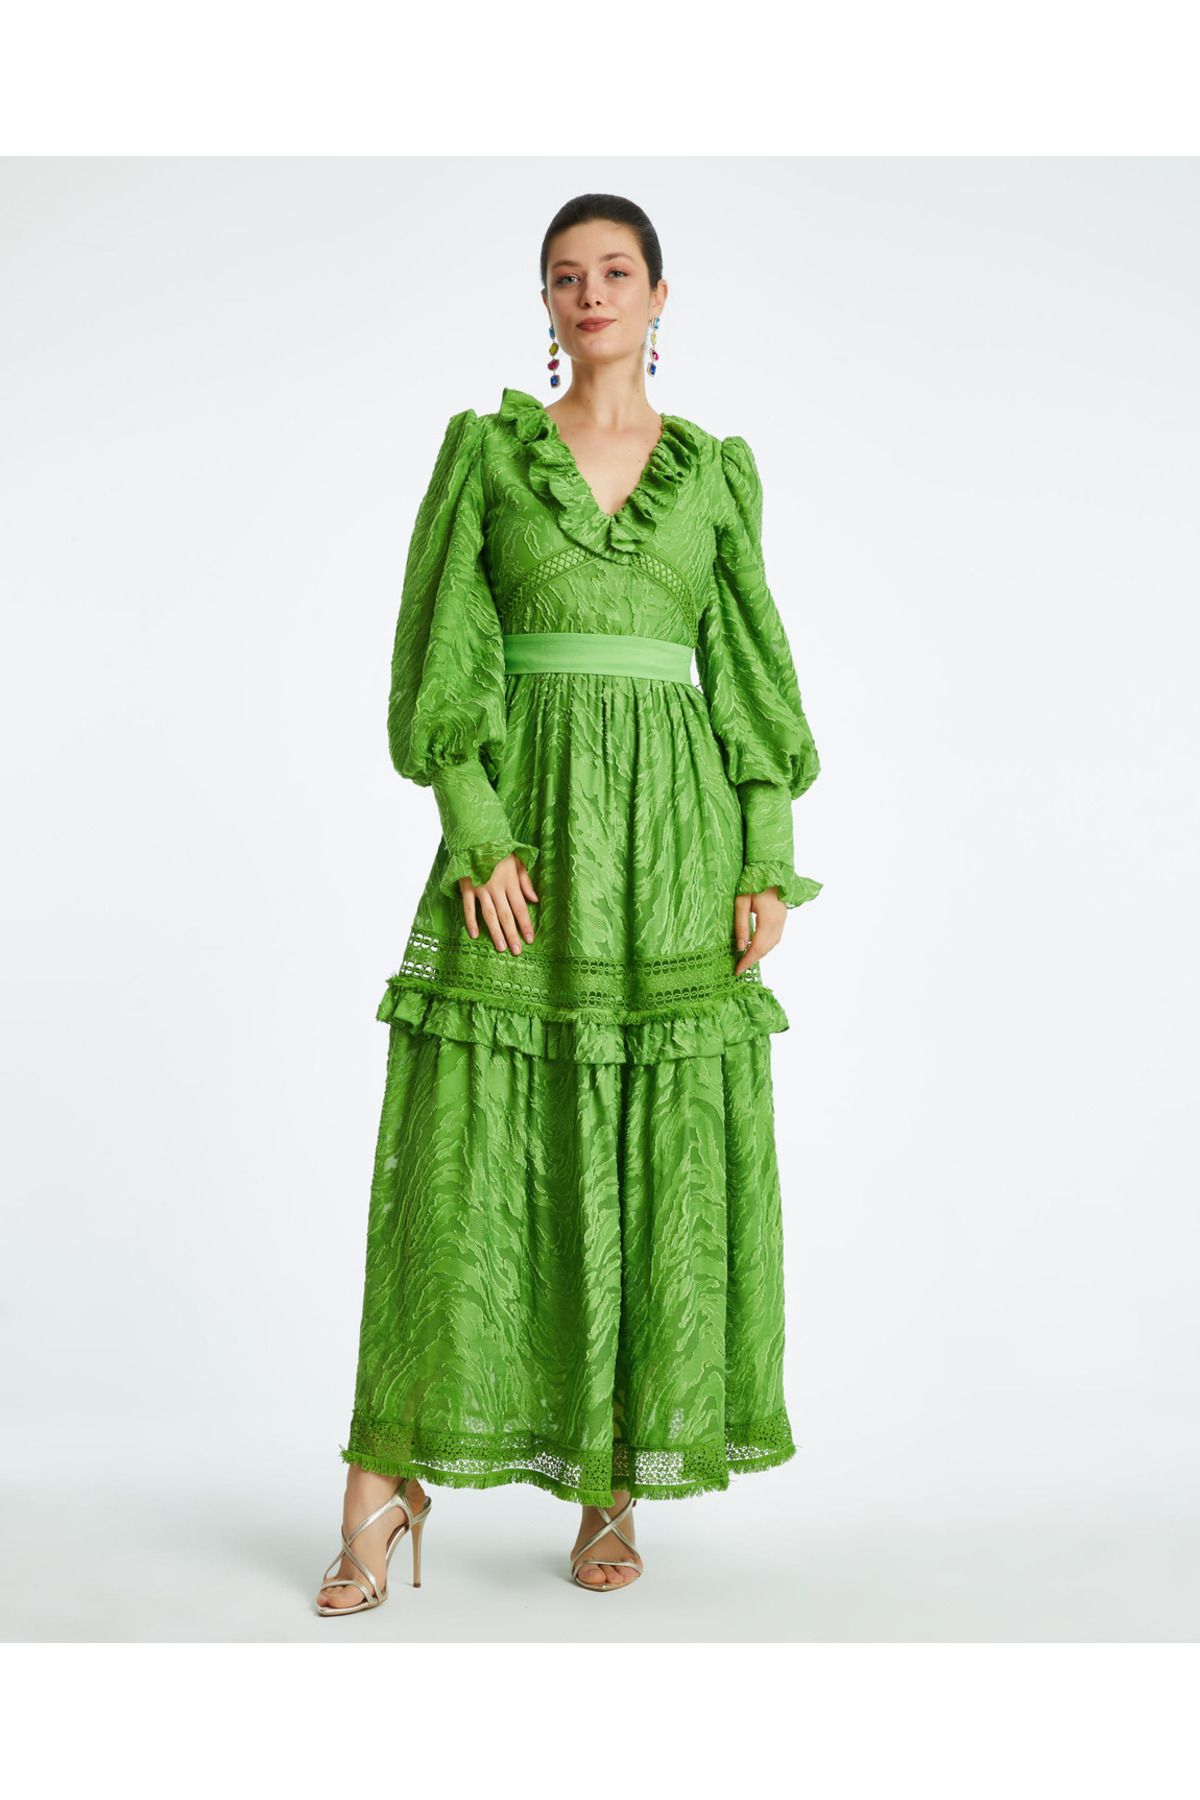 Serpil Serpil Kadın Yeşil Elbise 38411